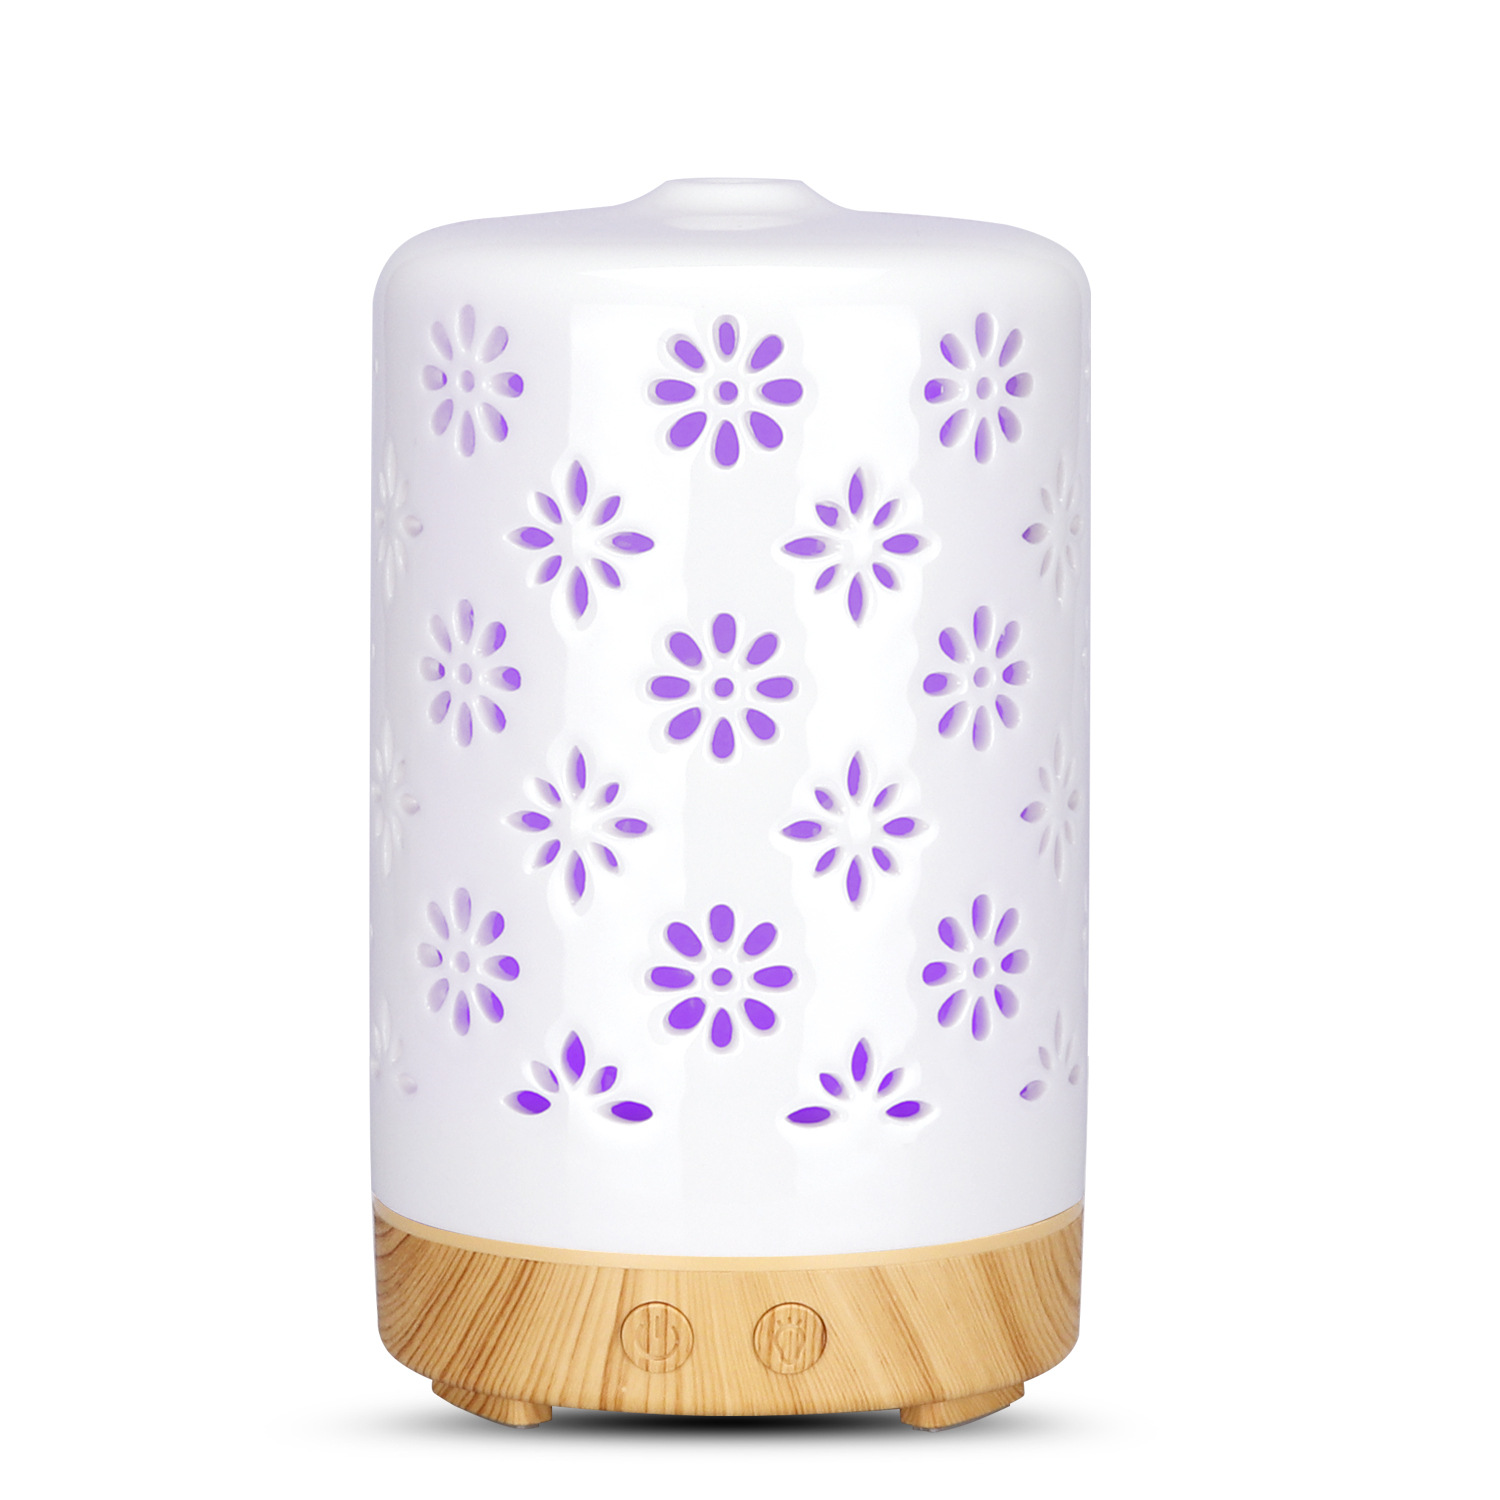 Keramik Essential Oil Aroma Air Freshener Diffuser 100ml Ultrasonic Diffuser